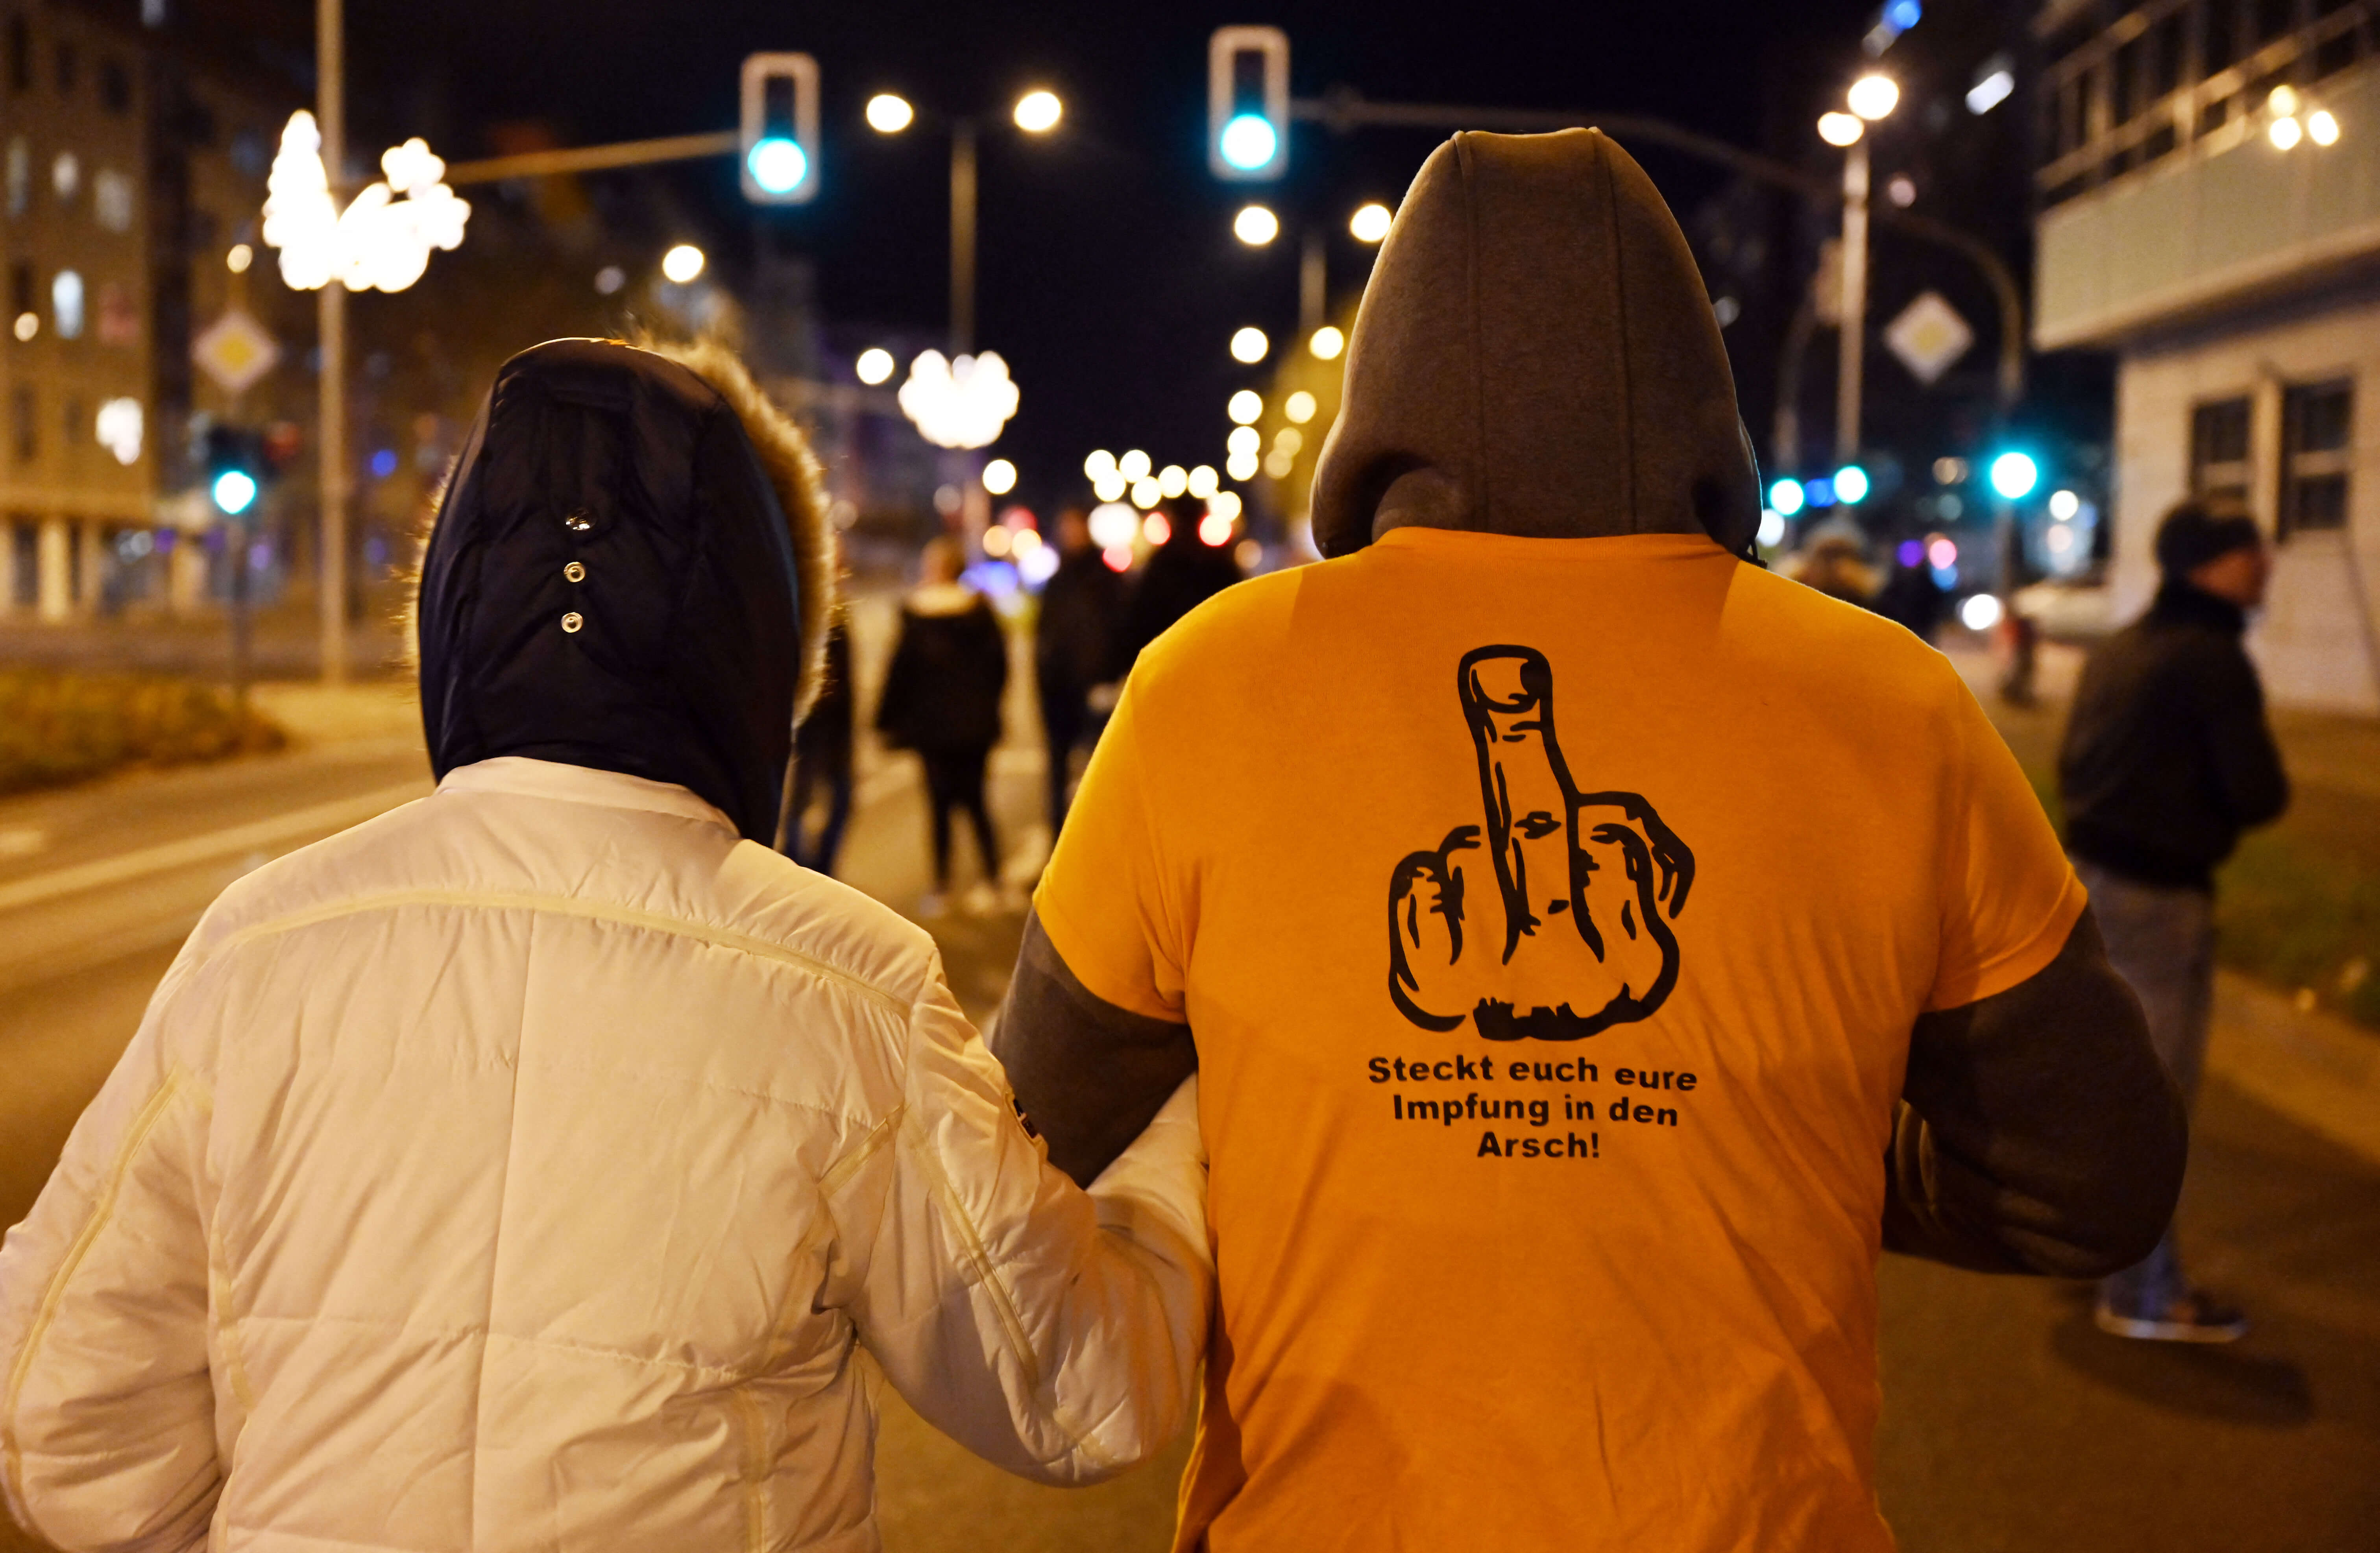 Чоловік у футболці з написом «Засунь щеплення собі в дупу». Ерфурт, 2021 рік. Фото: MARTIN SCHUTT / DPA-ZENTRALBILD / DPA PICTURE-ALLIANCE VIA AFP